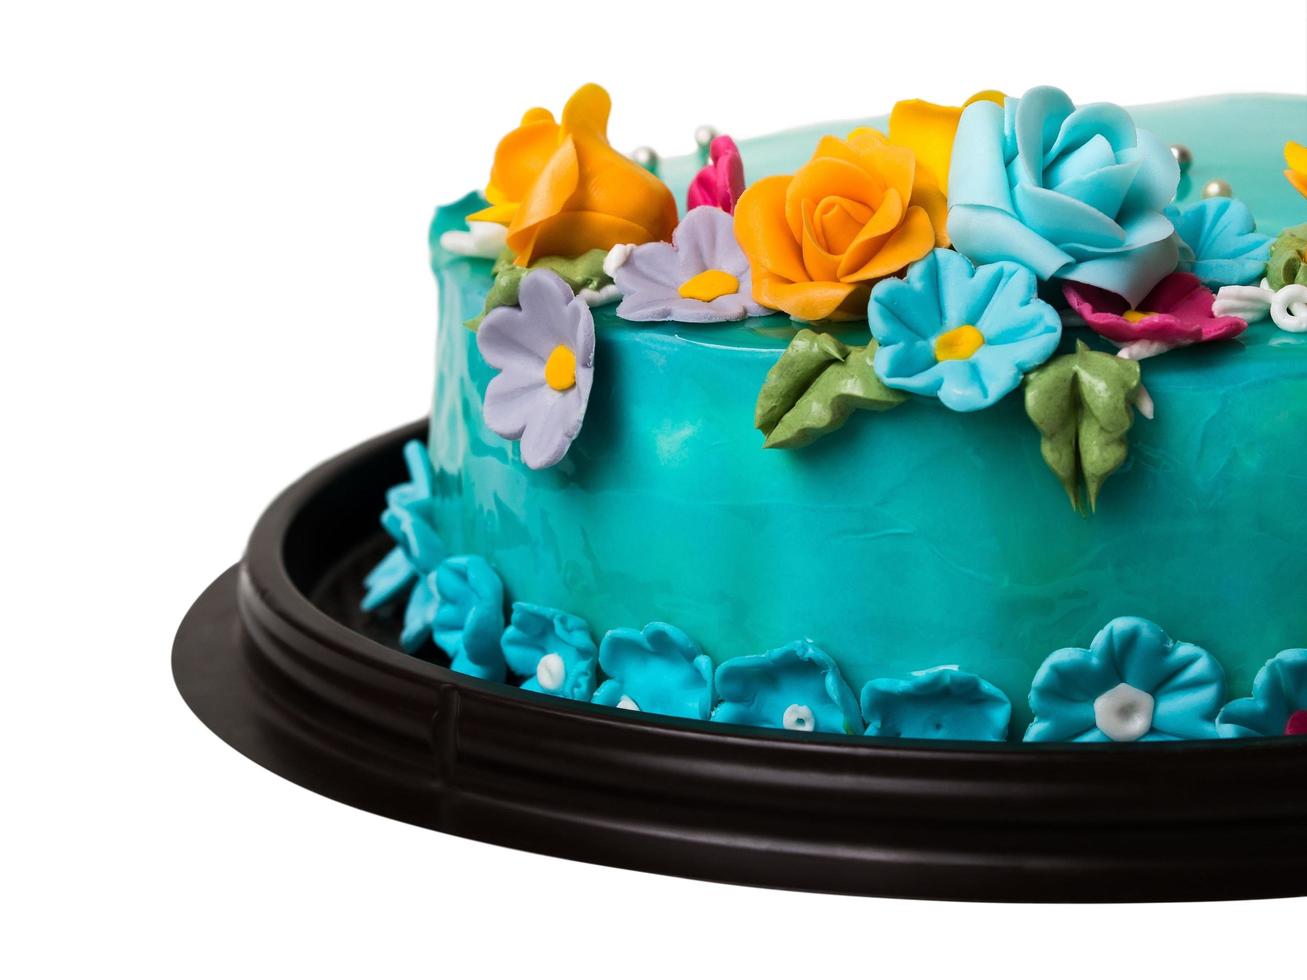 gros plan de décorations de gâteau à la confiture d'océan bleu avec des fruits glacés colorés photo